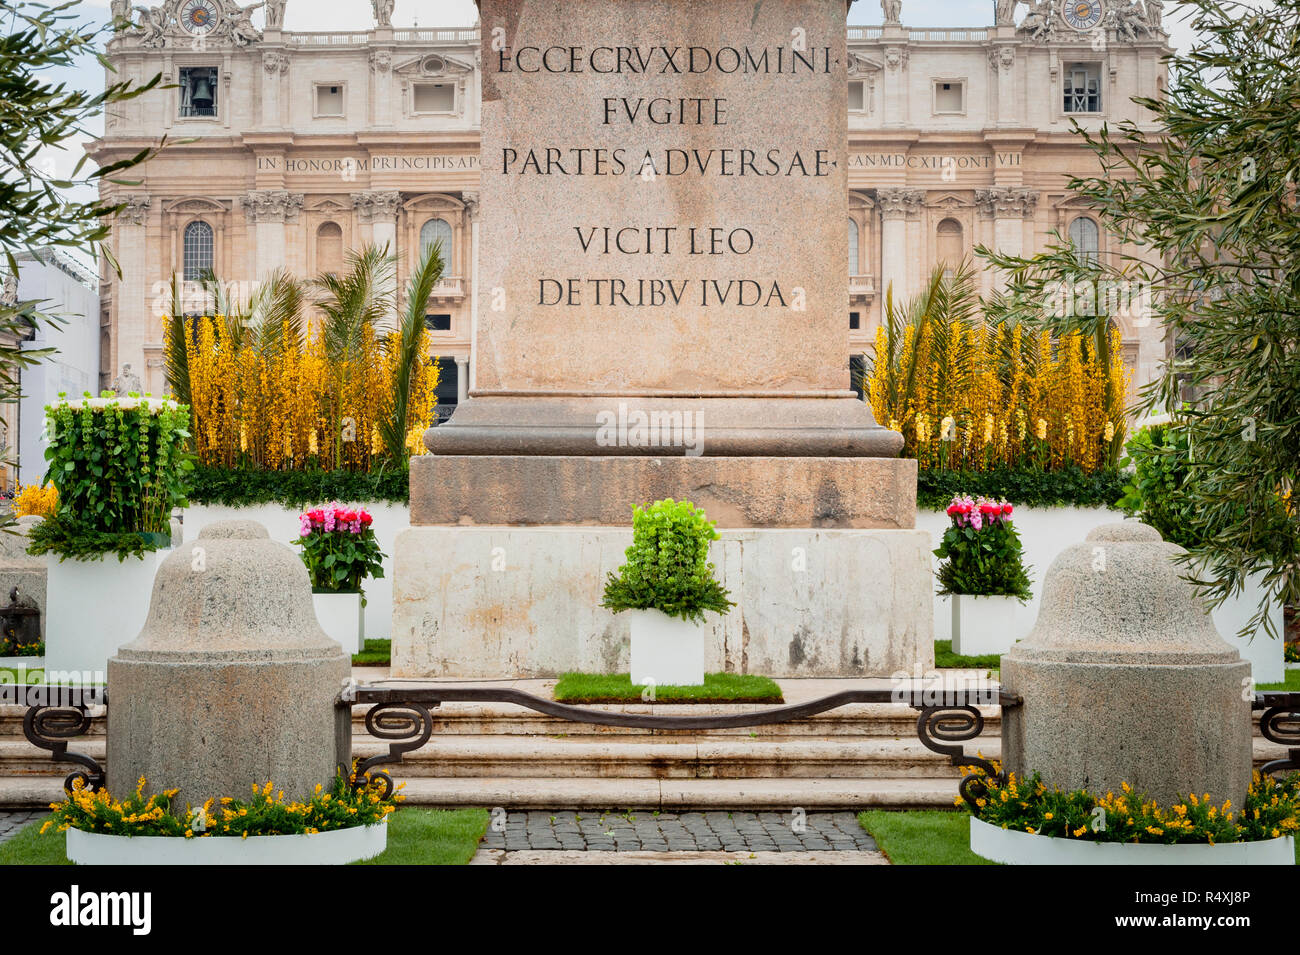 Affichage Floral - fleurs sur la Piazza San Pietro Rome Vatican St Peters Square Banque D'Images